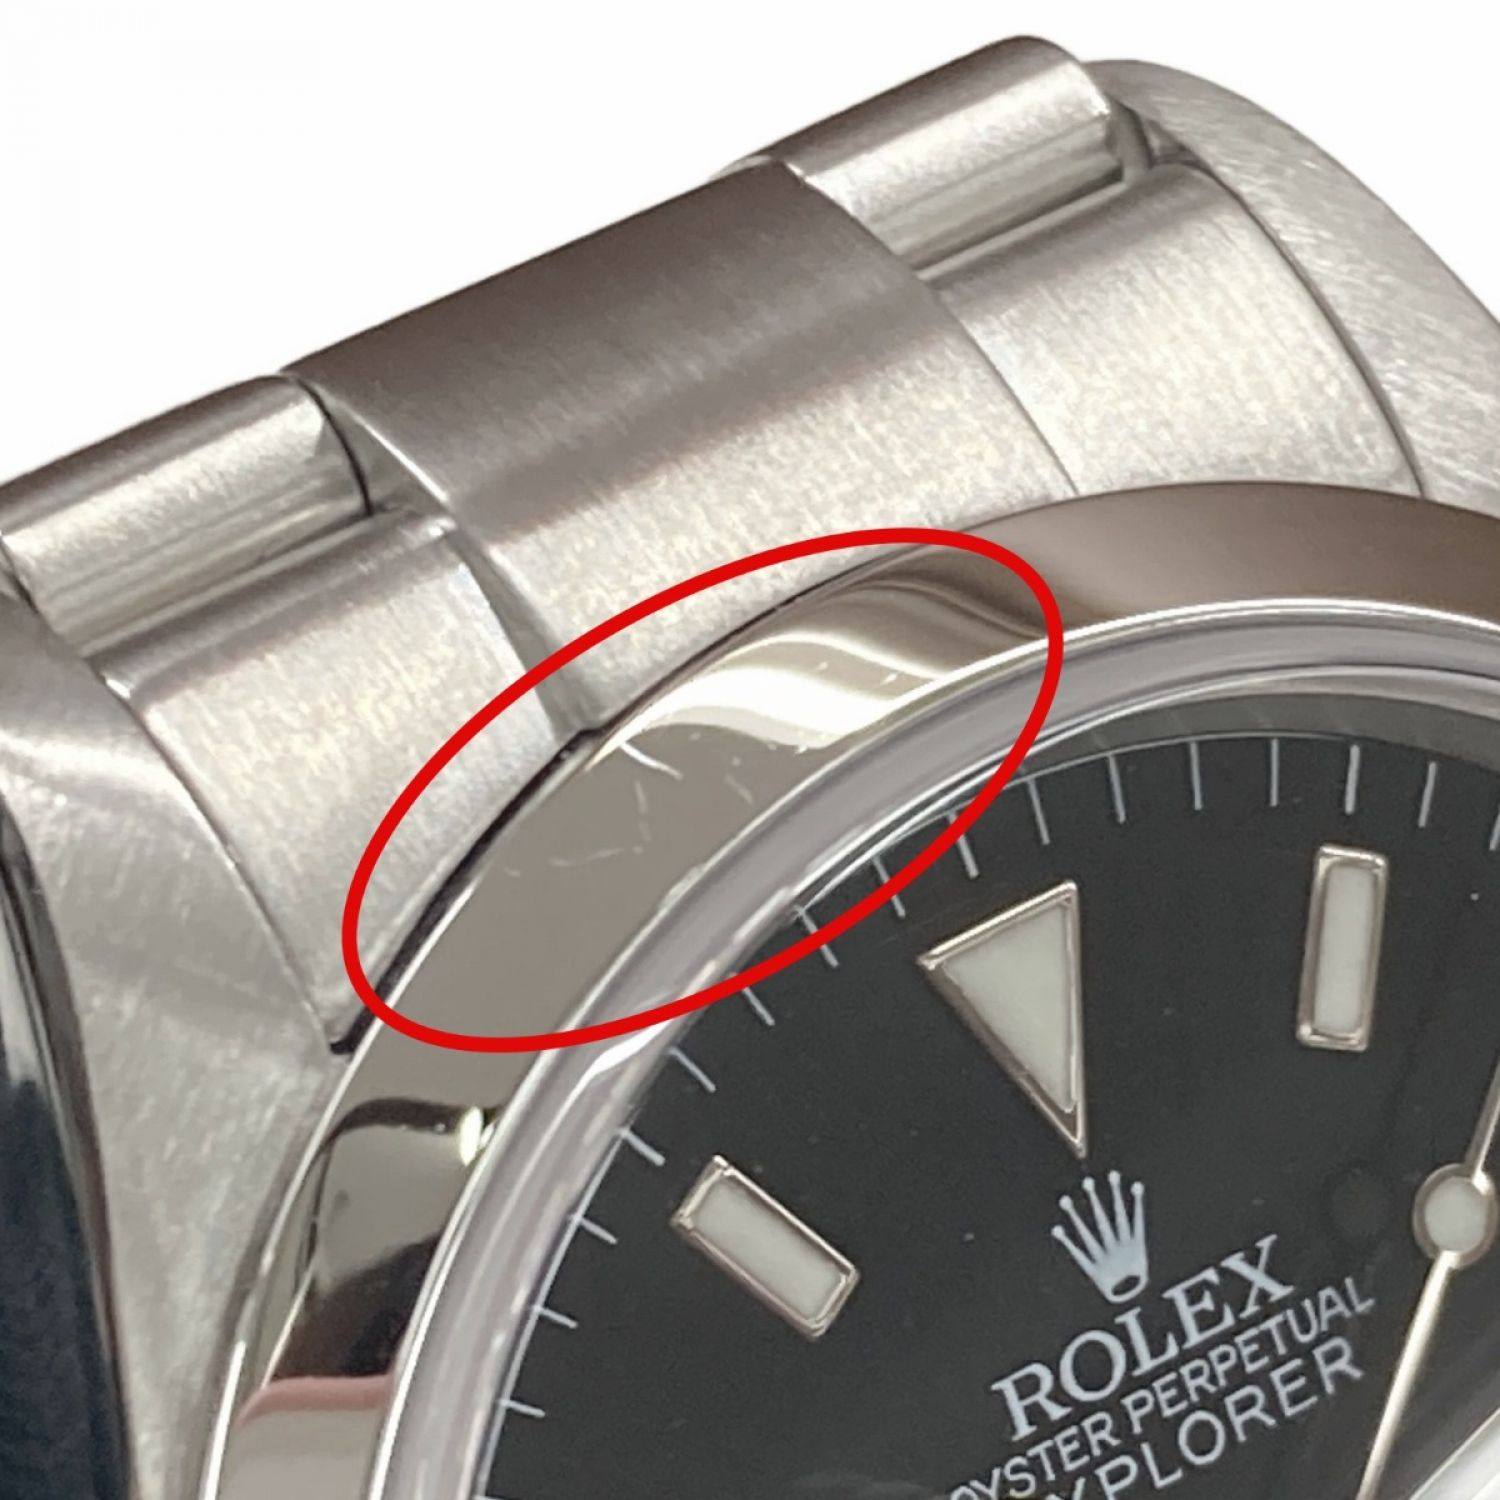 ロレックス ROLEX 114270 F番(2004年頃製造) ブラック メンズ 腕時計